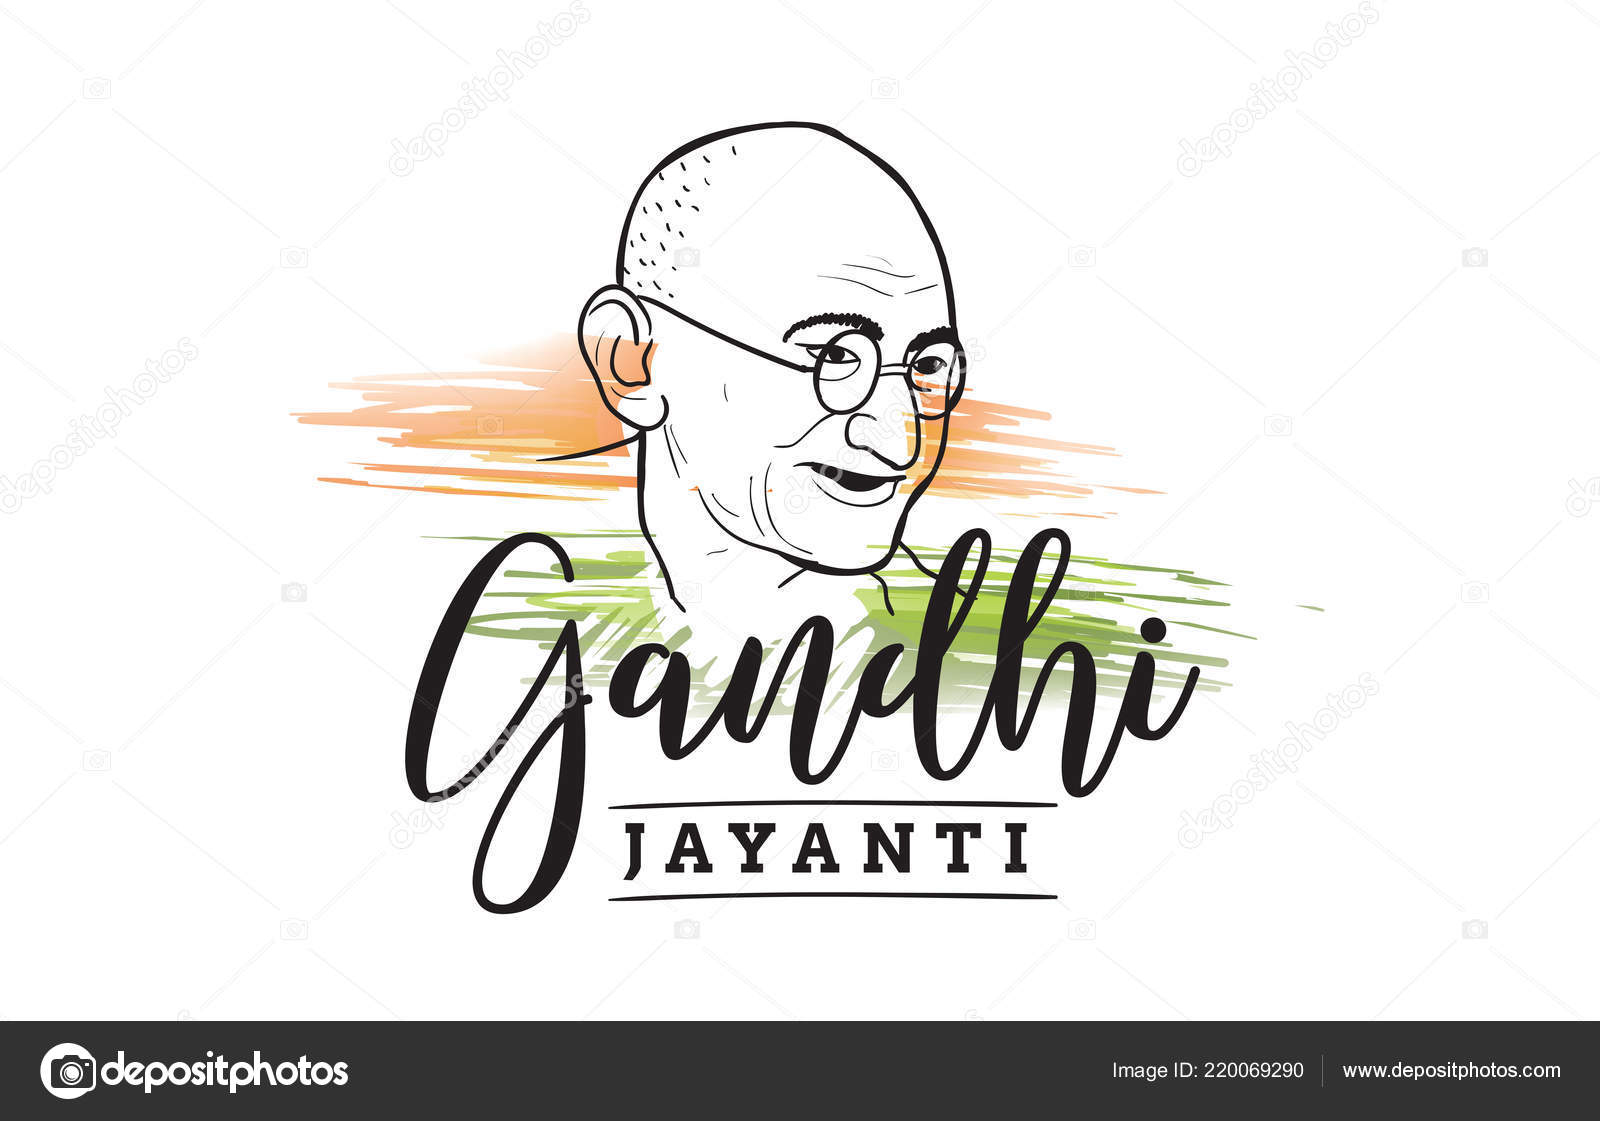 Gandhi Jayanti Celebration 2021 - Karnataka Tourism